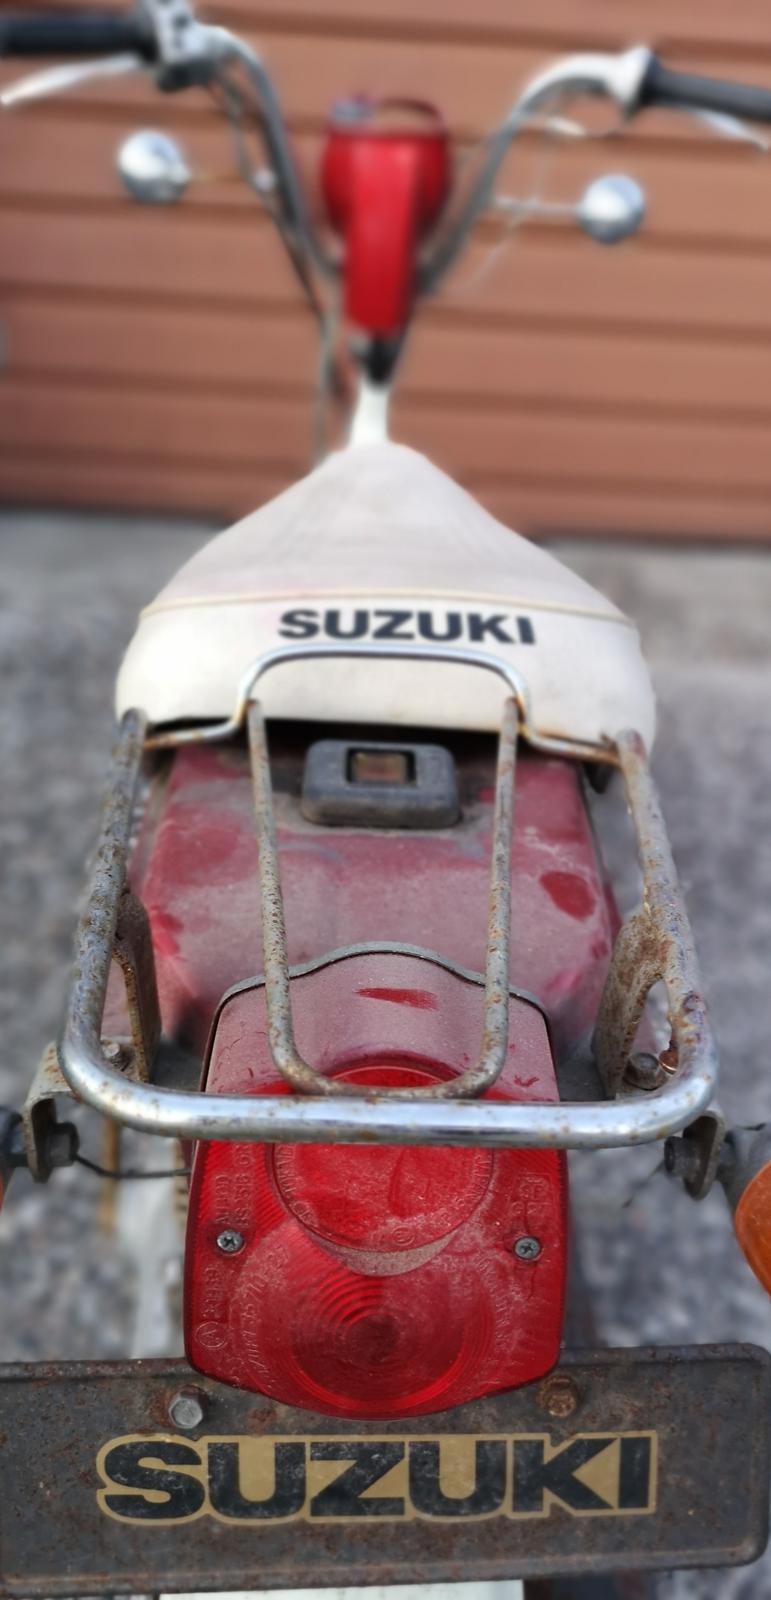 Suzuki FZ50 billede 11